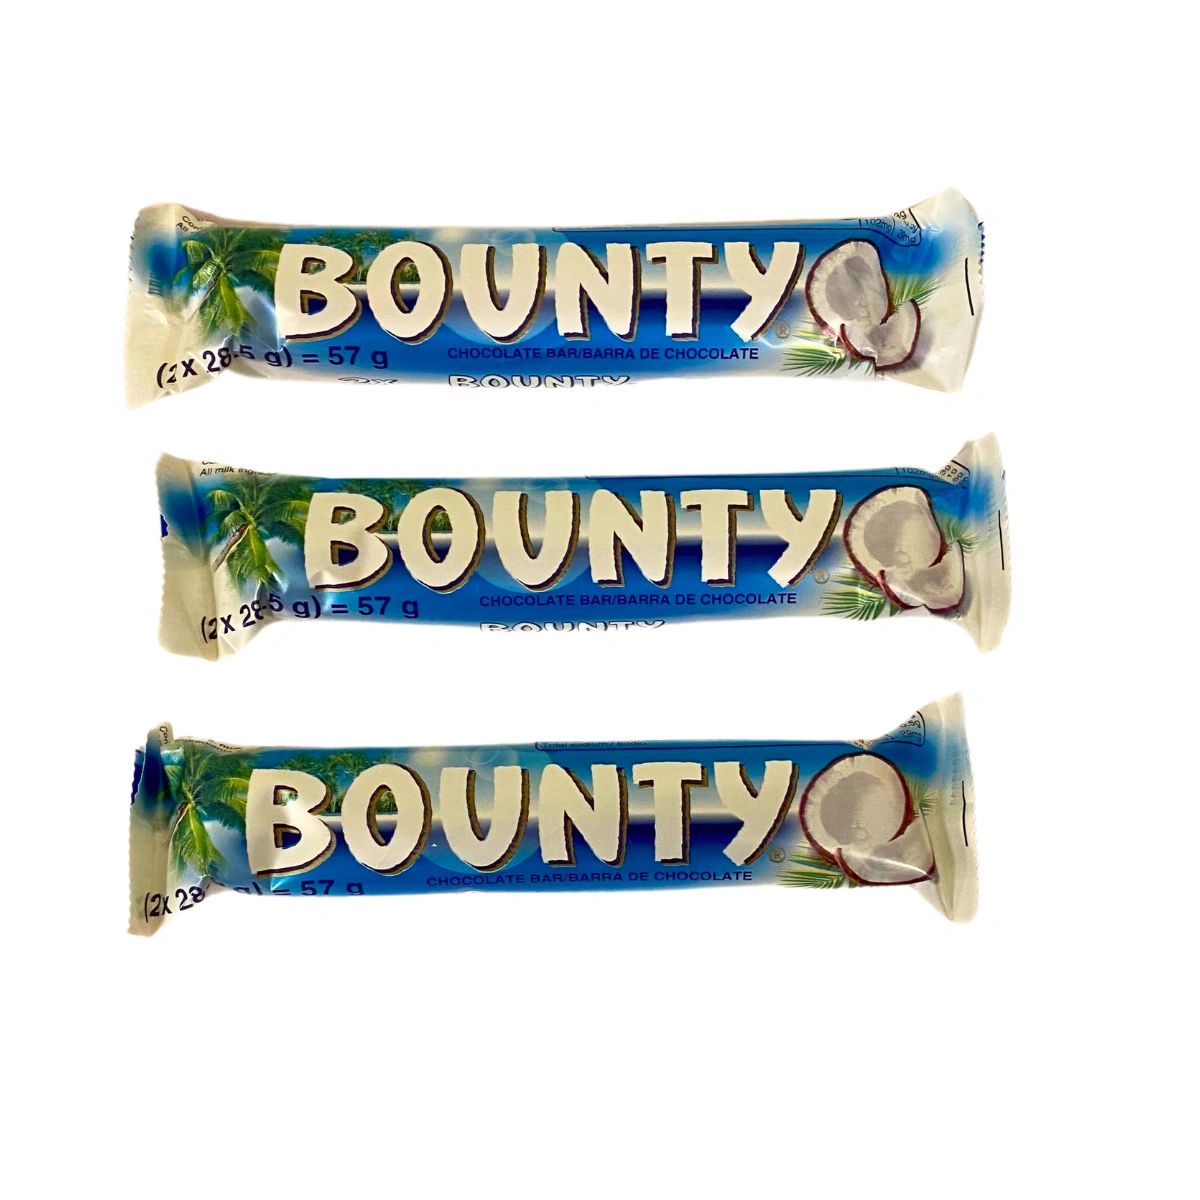 BOUNTY BAR MILK CHOCOLATE BAR 57g